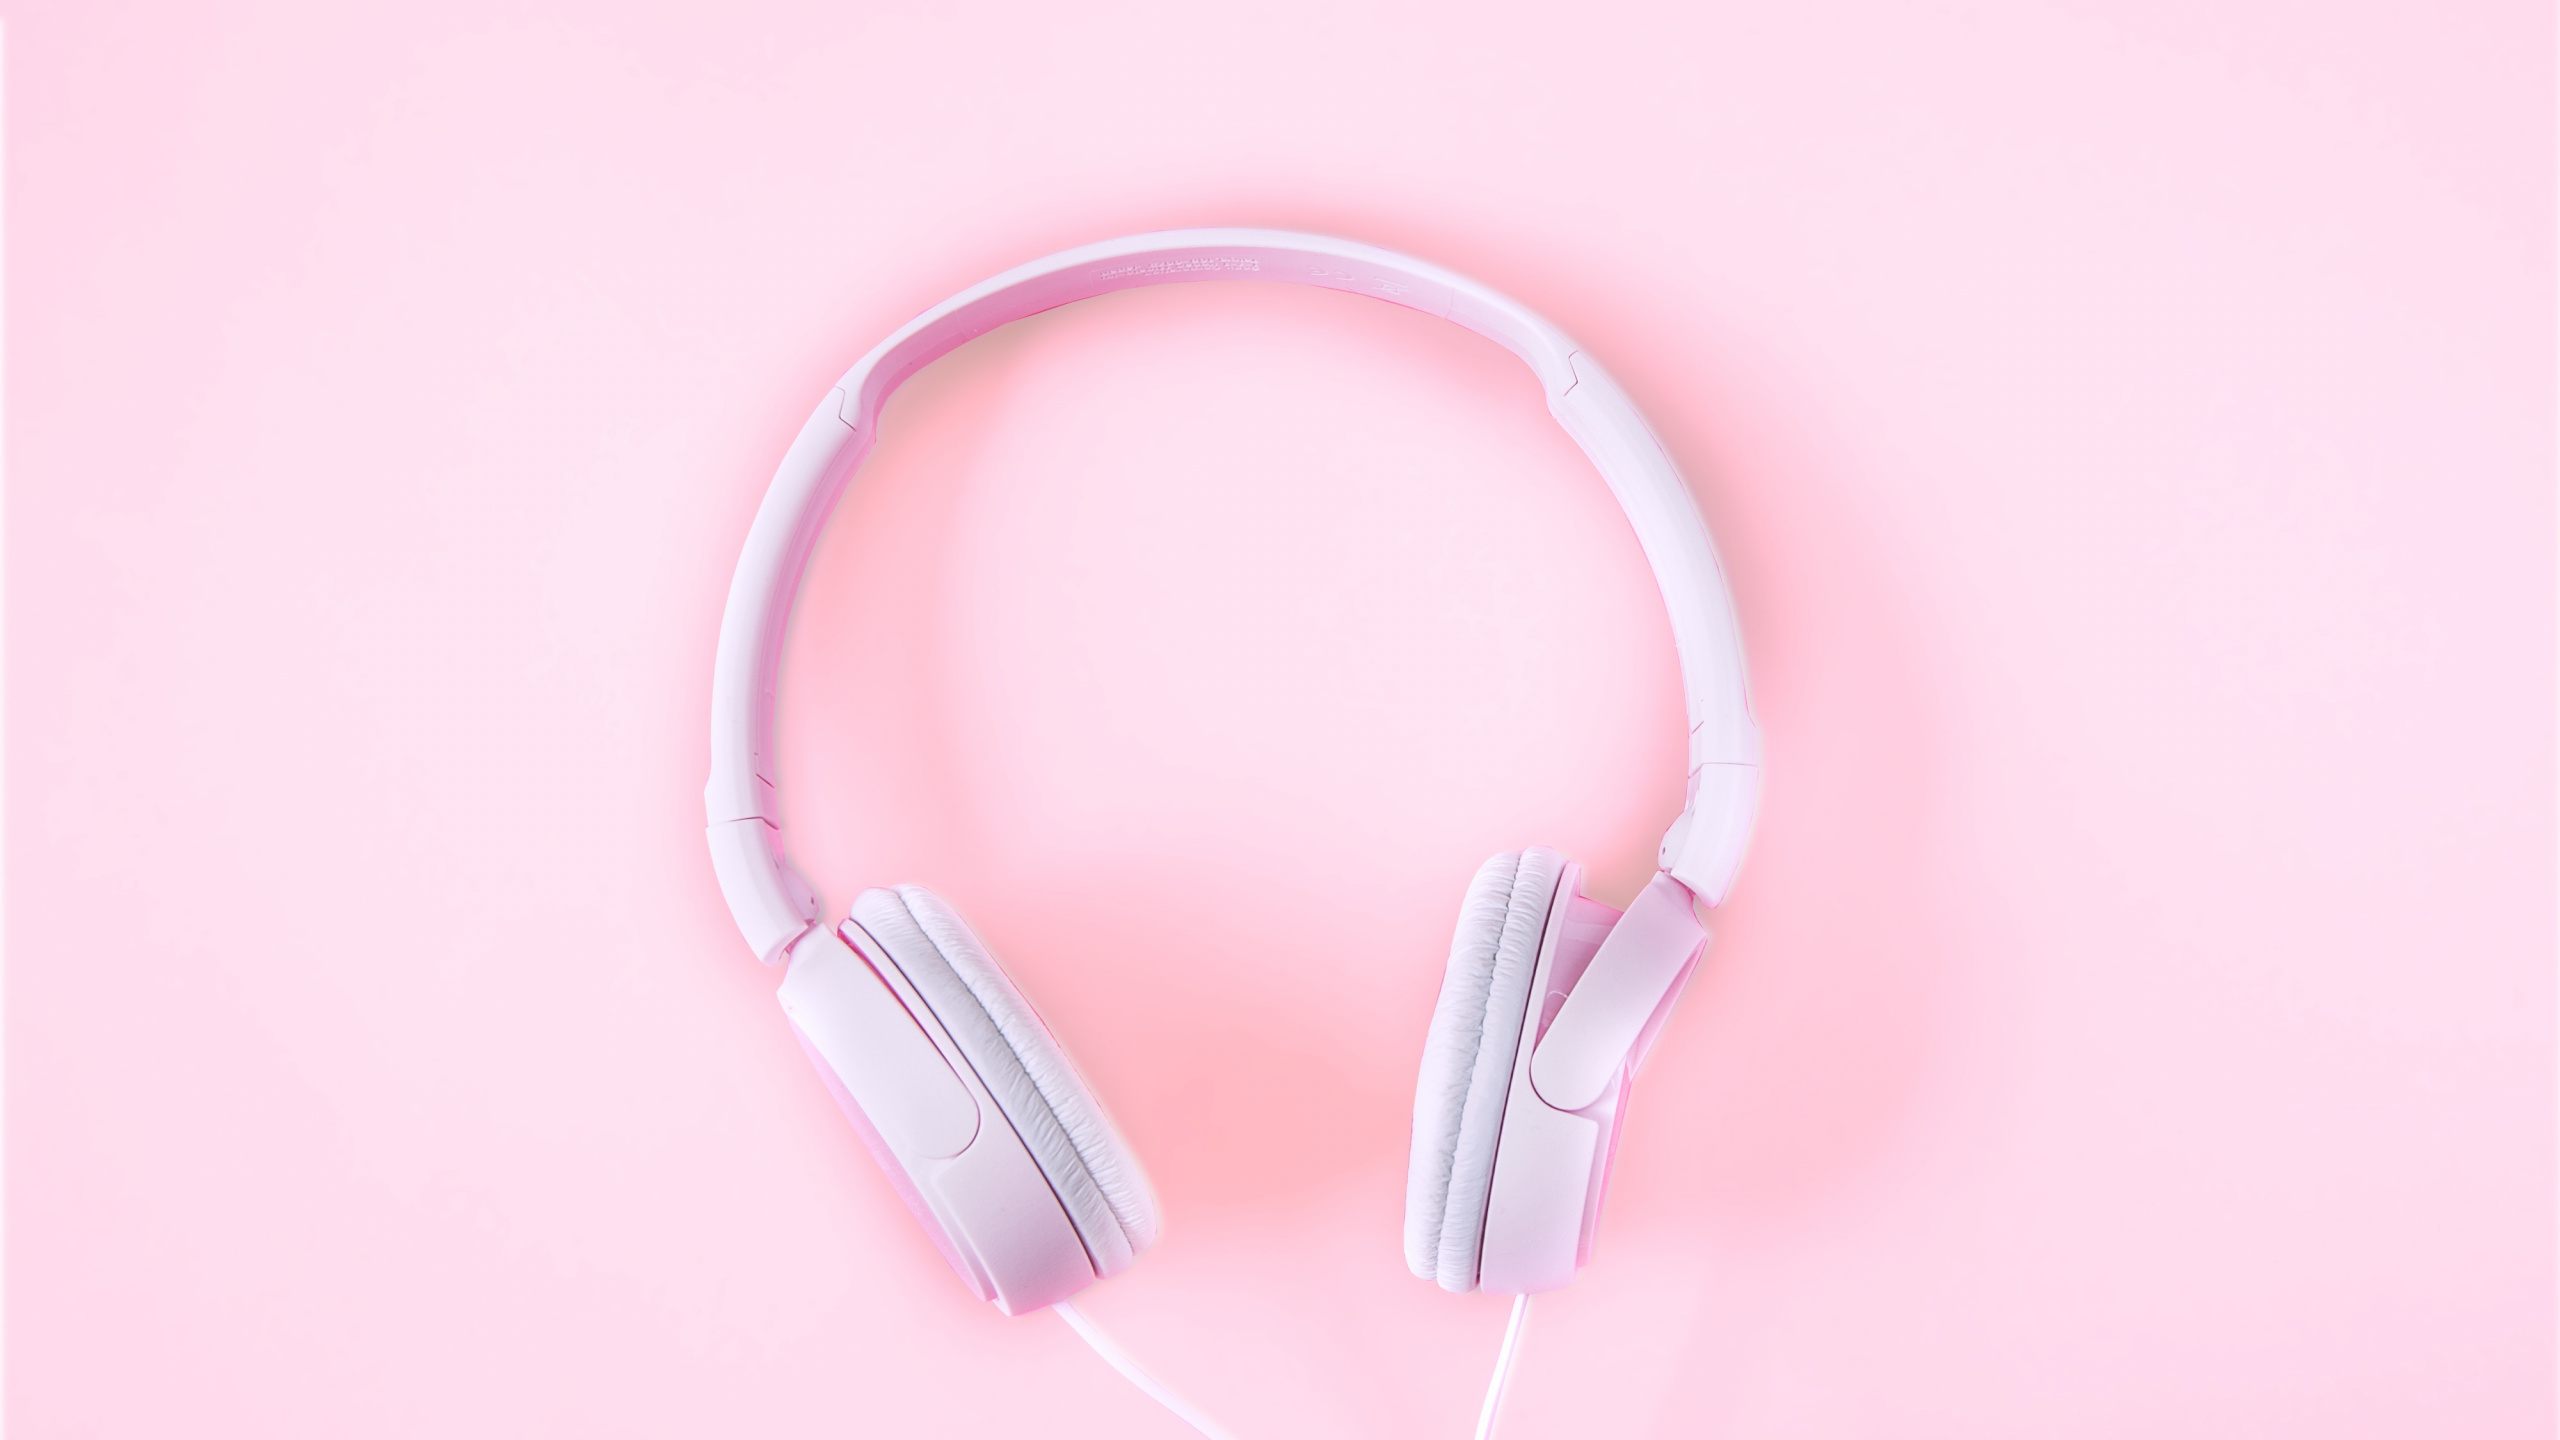 Kopfhörer, Pink, Audiogeräten, Gadget, Ohr. Wallpaper in 2560x1440 Resolution